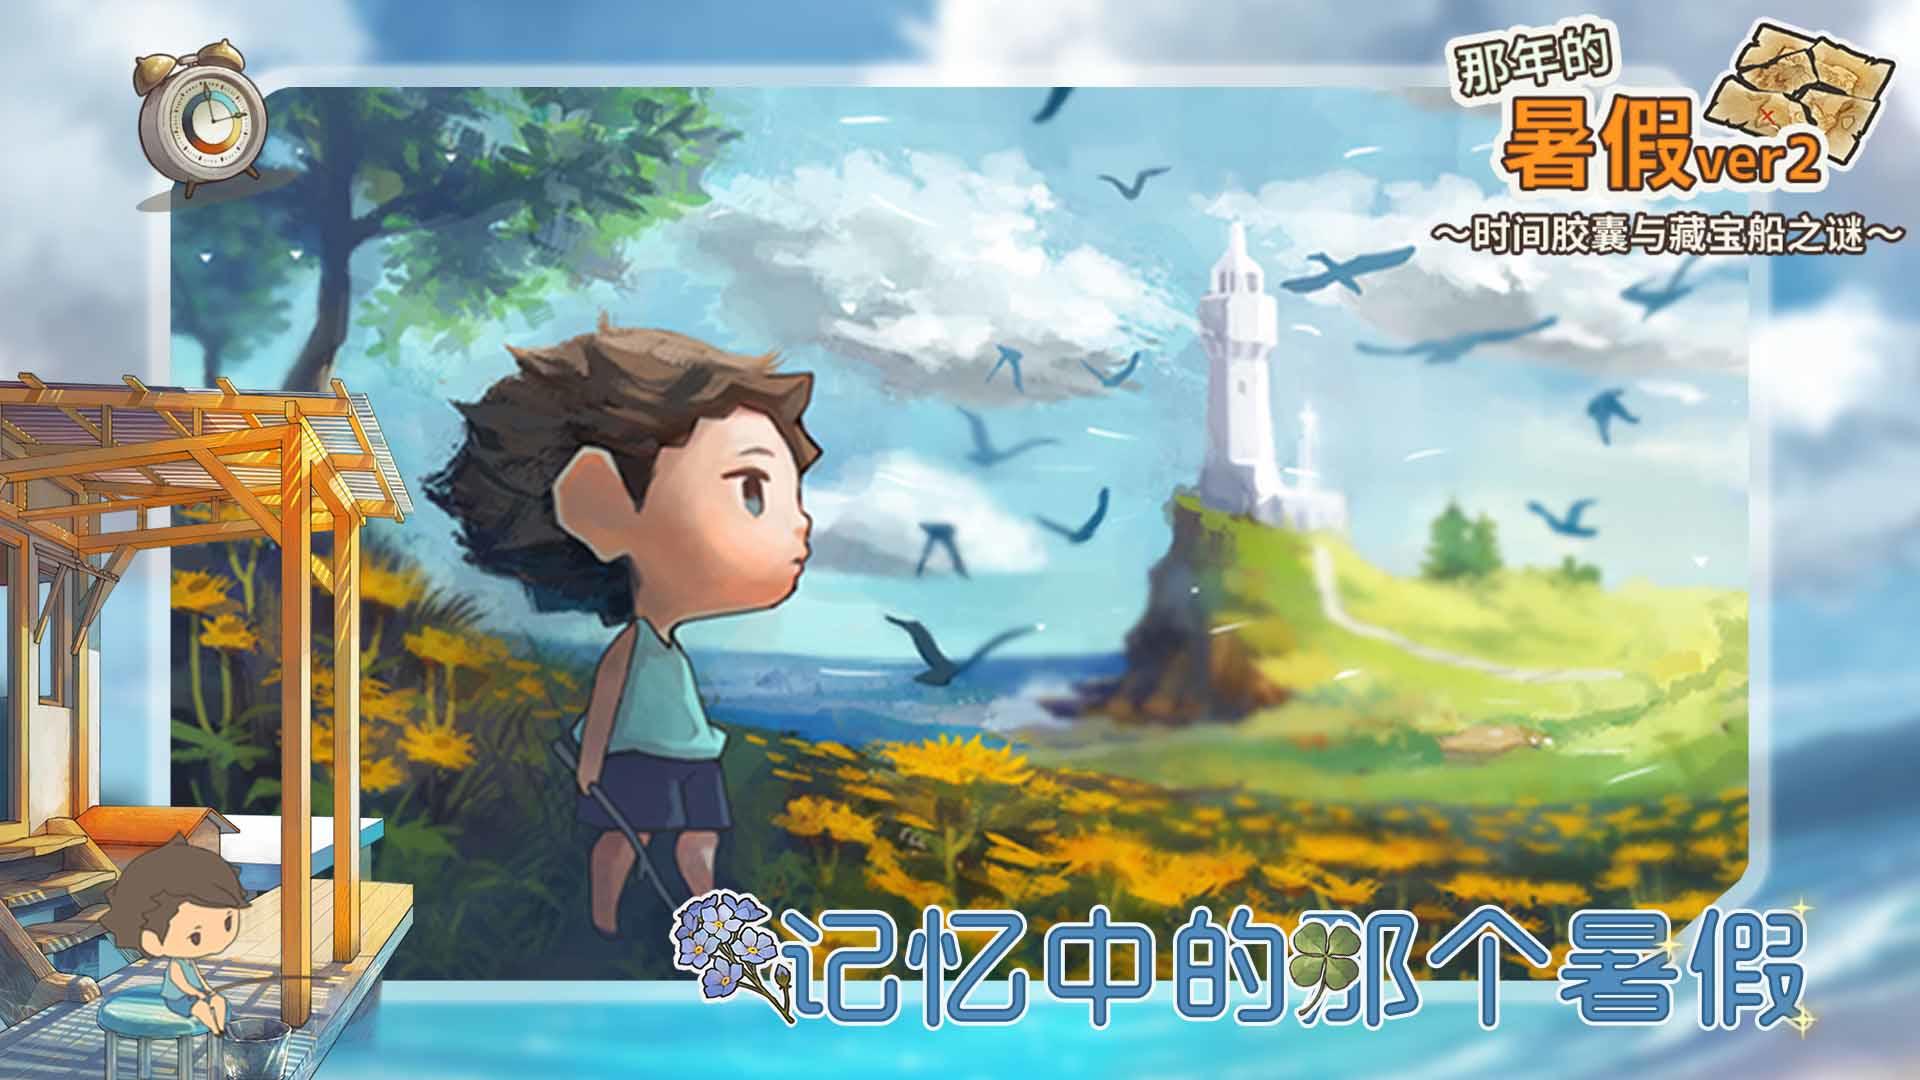 Screenshot 1 of Shōwa-Ära-Geschichte – Sommerurlaub in diesem Jahr 